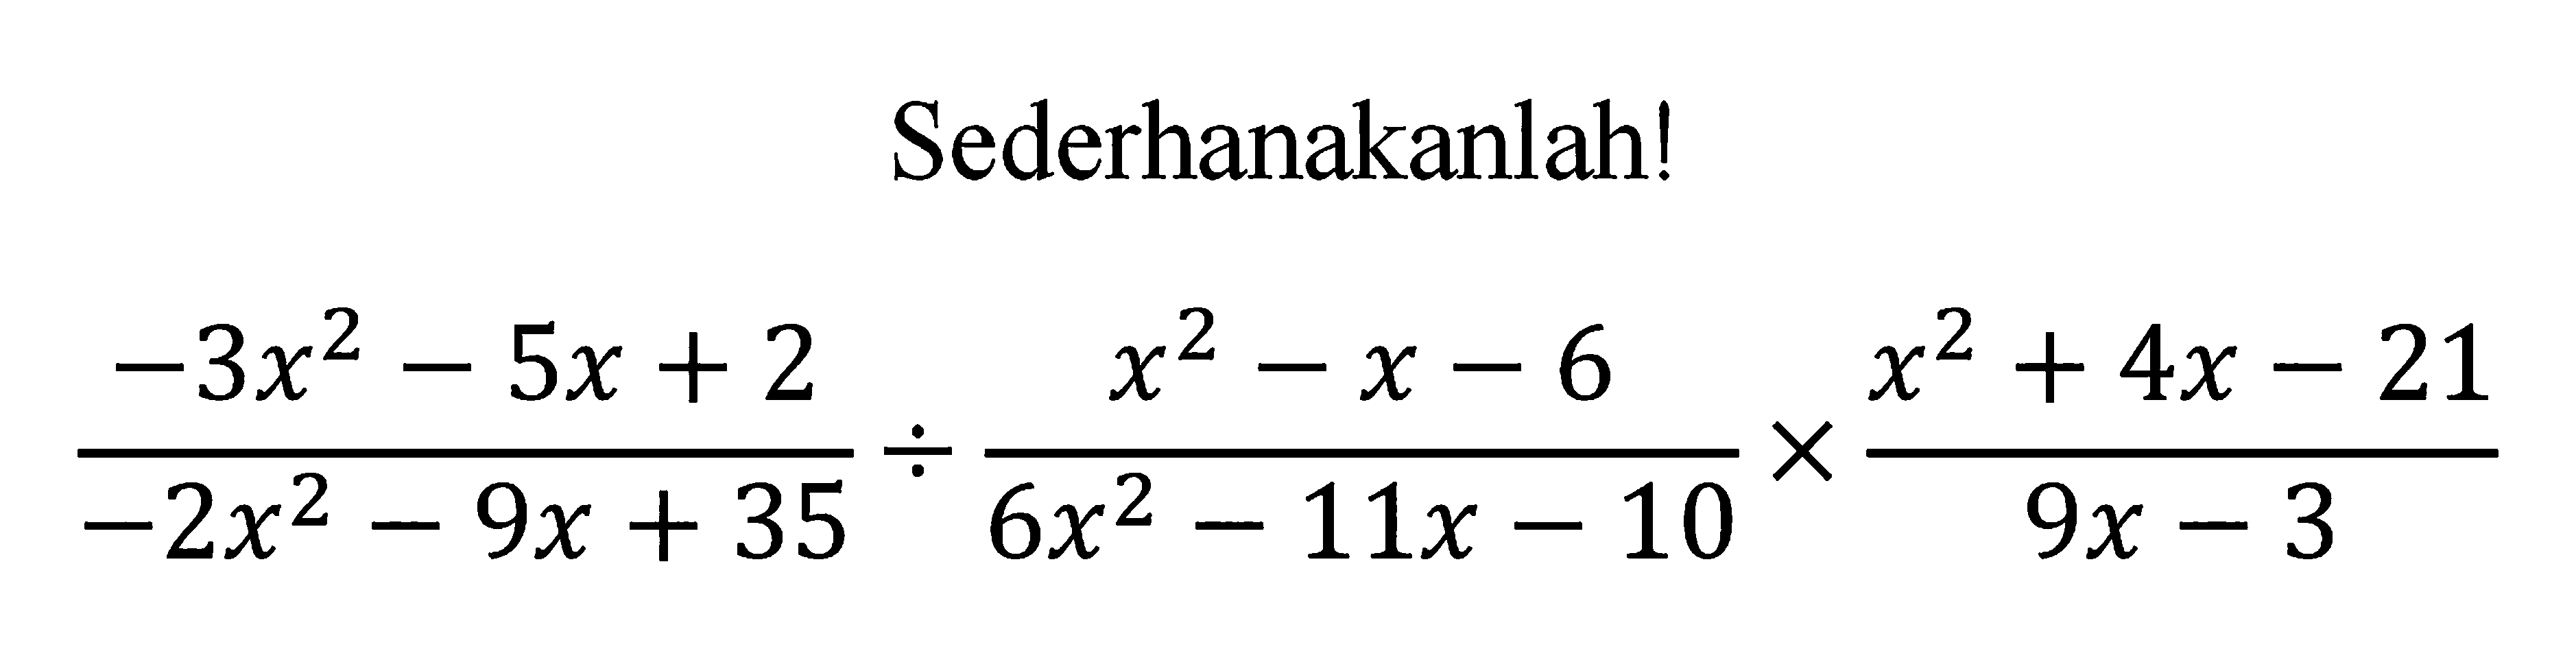 Sederhanakanlah! (-3x^2 - 5x + 2)/(-2x^2 - 9x + 35) : (x^2 - x - 6)/(6x^2 - 11x - 10) x (x^2 + 4x - 21)/(9x - 3)